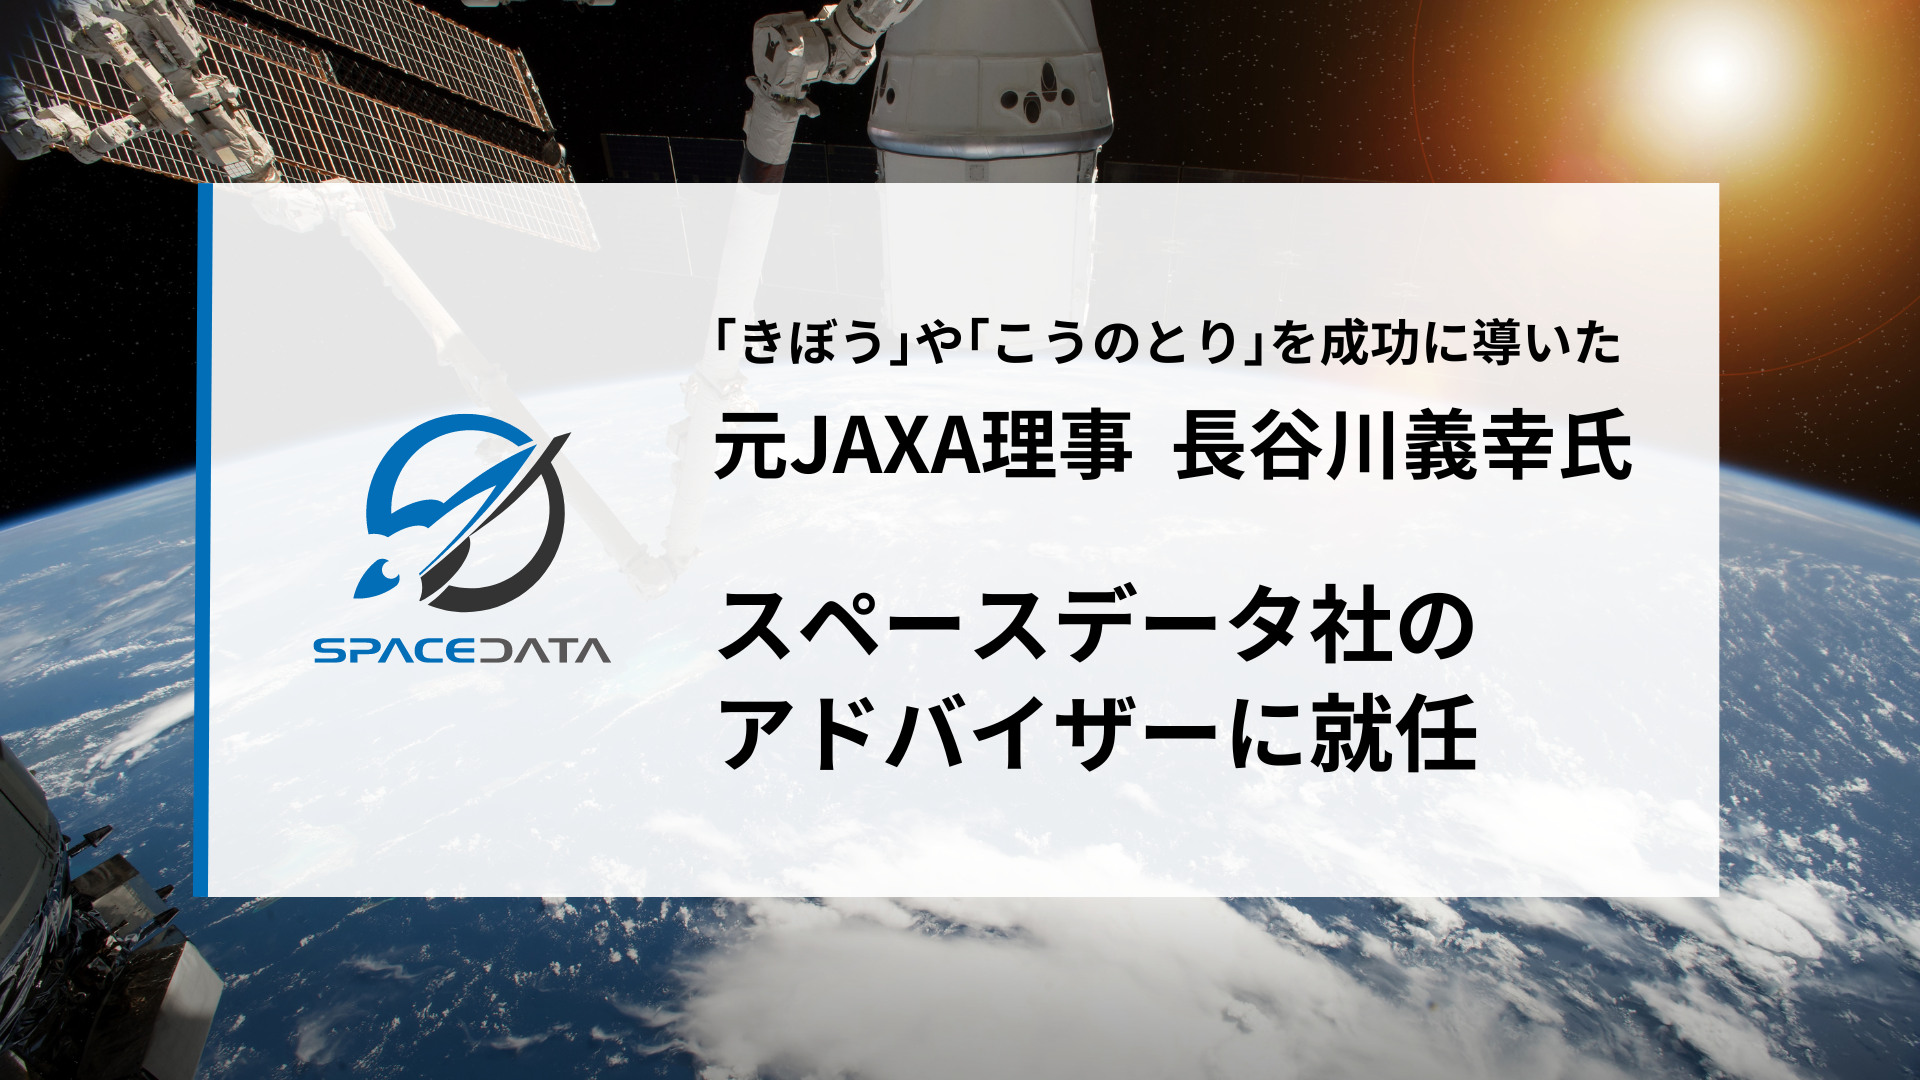 ISS「きぼう」「こうのとり」プロジェクトを牽引した元JAXA理事の長谷川義幸氏、スペースデータのアドバイザーに就任